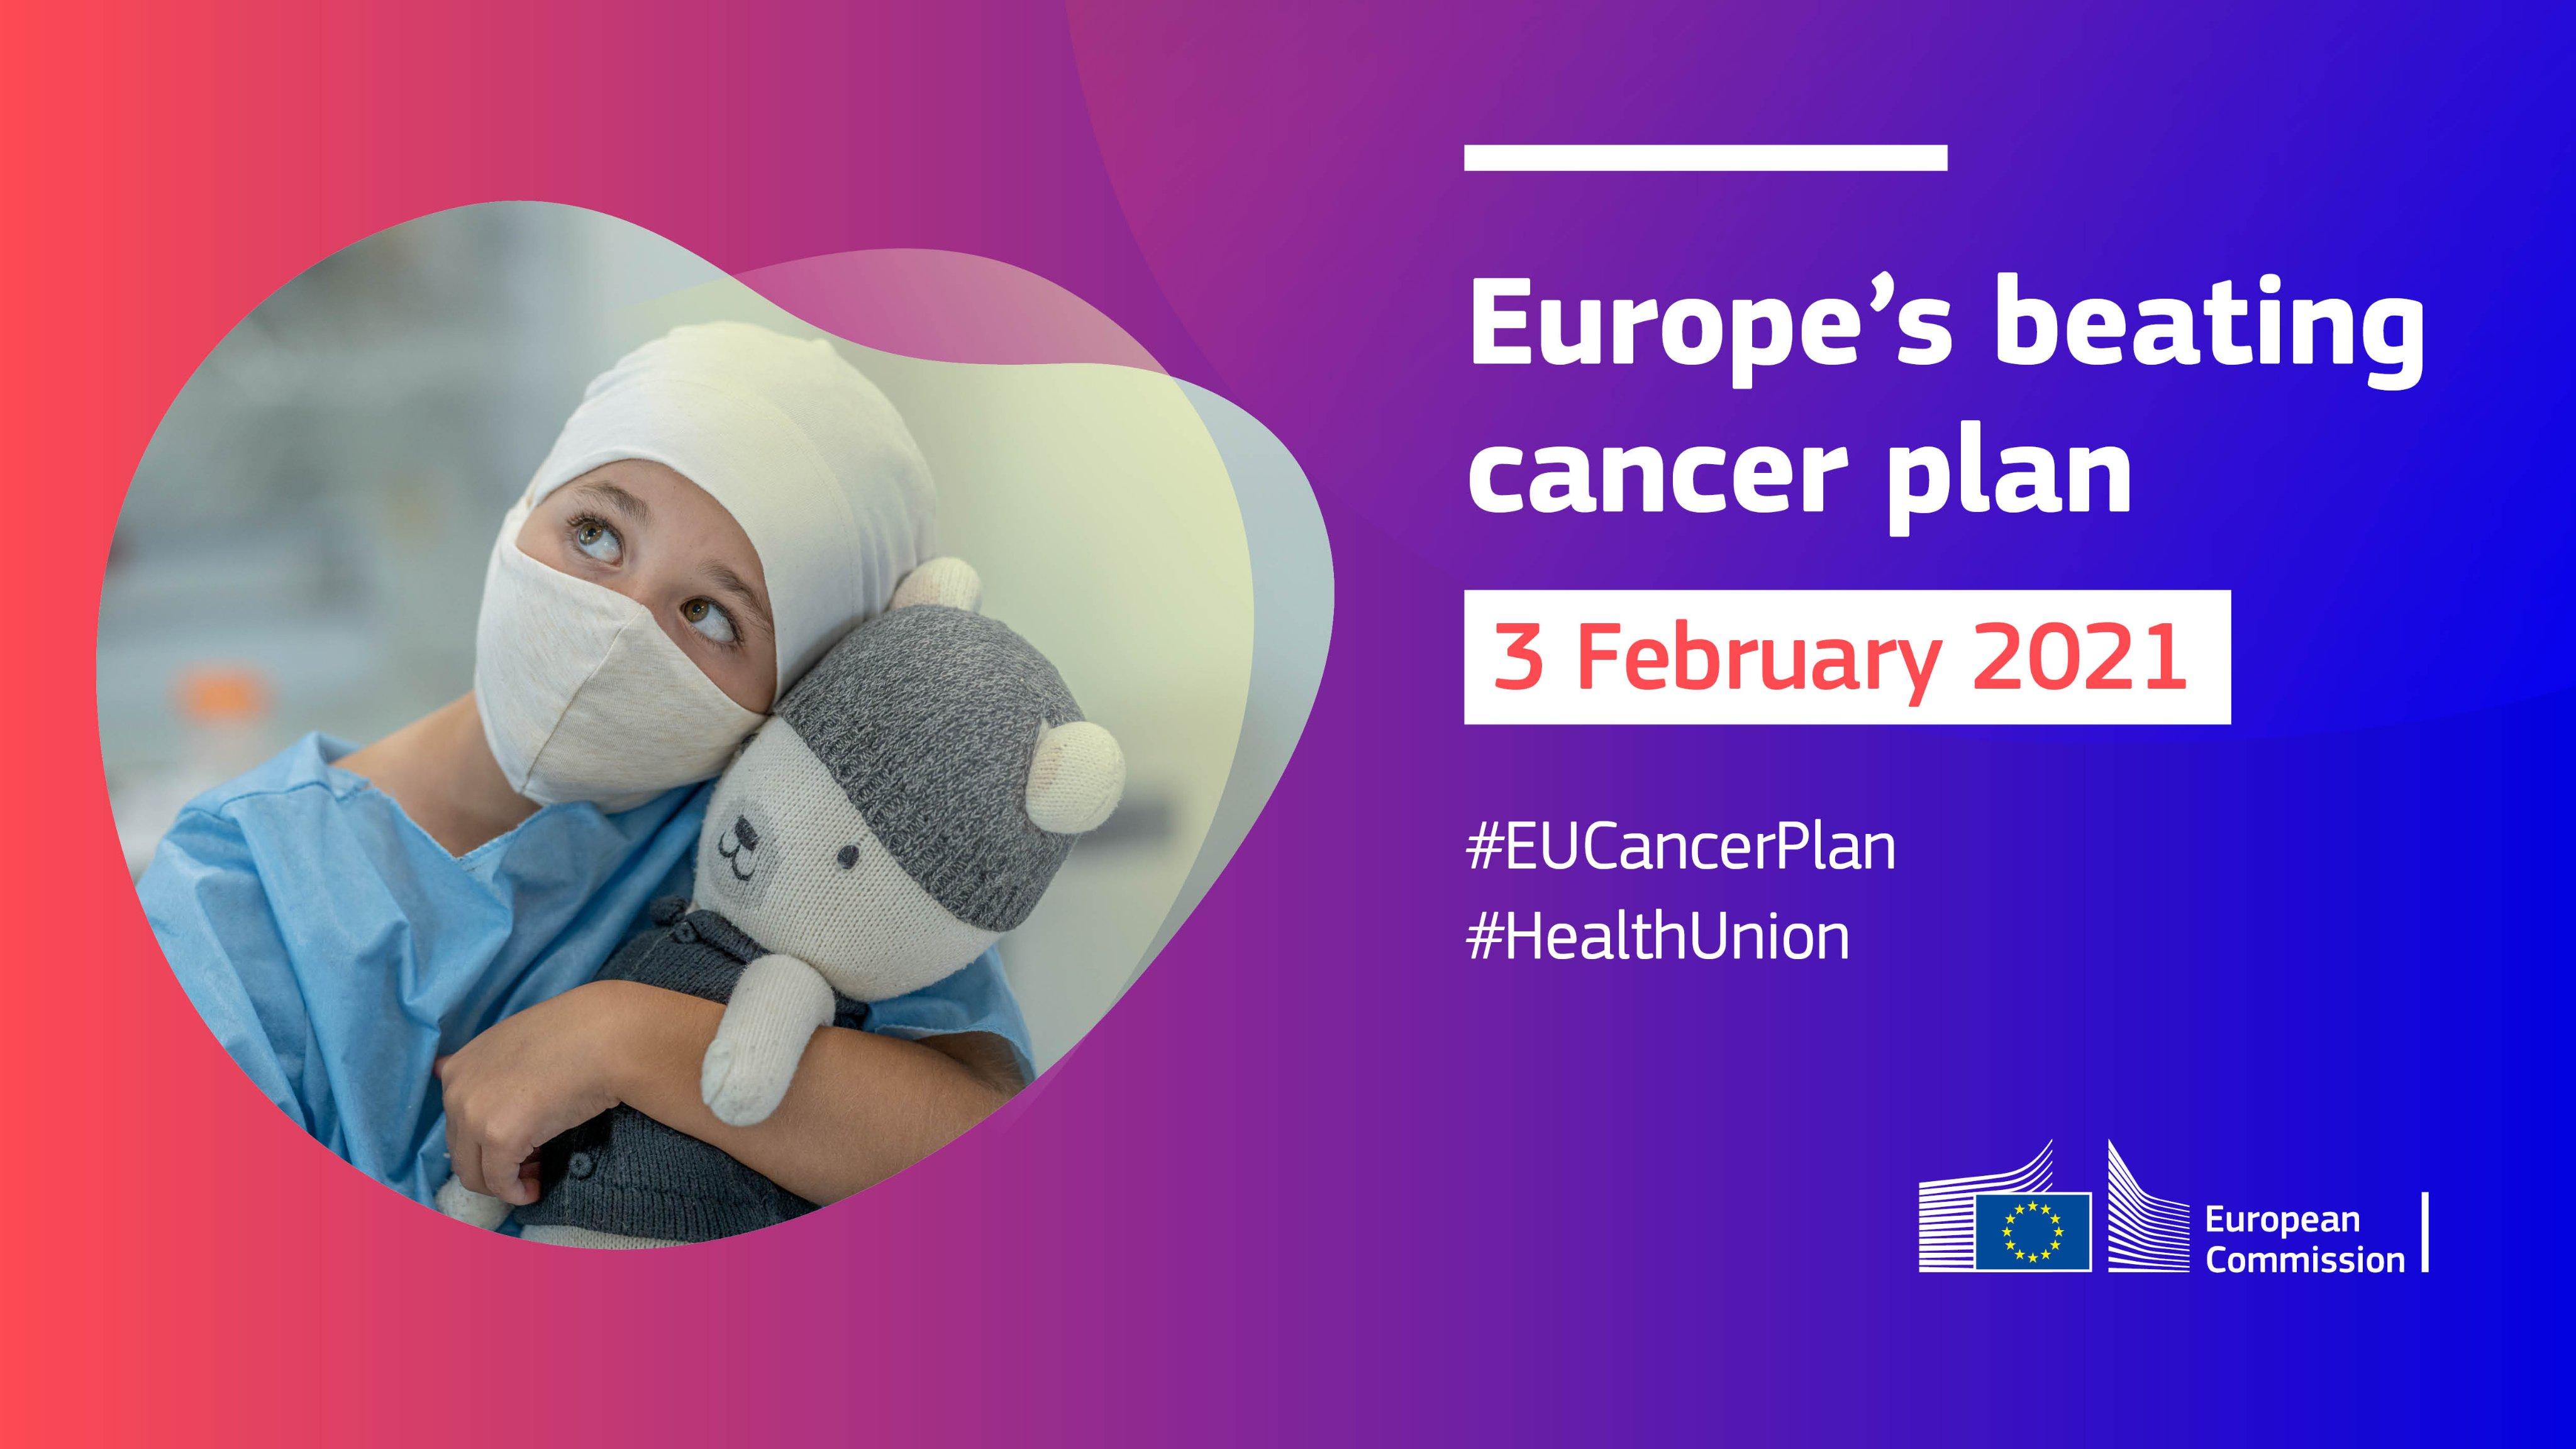 Commission publishes EU Cancer Plan